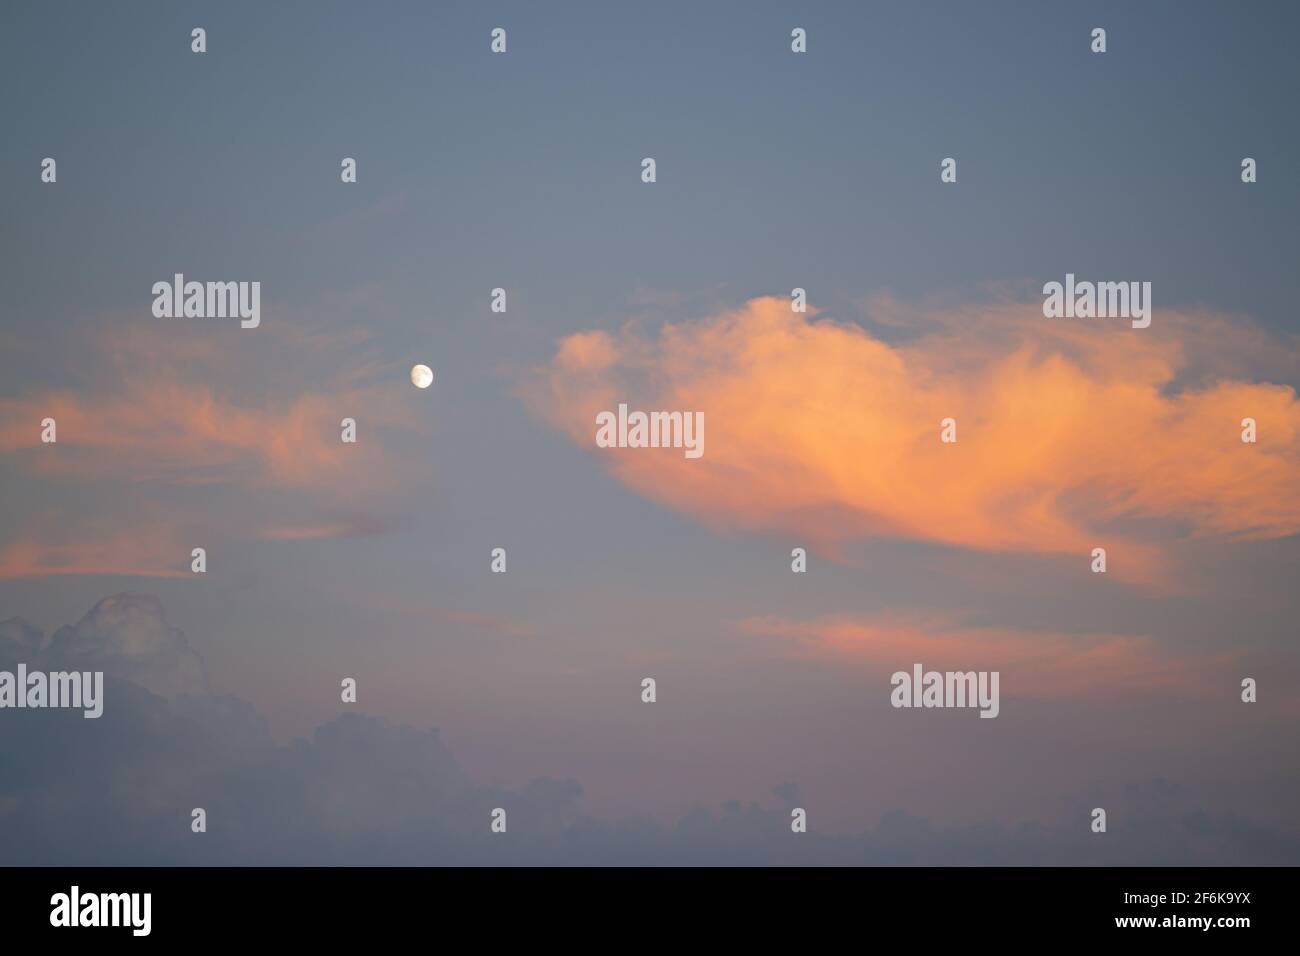 Cielo blu e nuvole arancioni. Cielo di tramonto con la luna, le nuvole sono colorate in arancione. Foto Stock